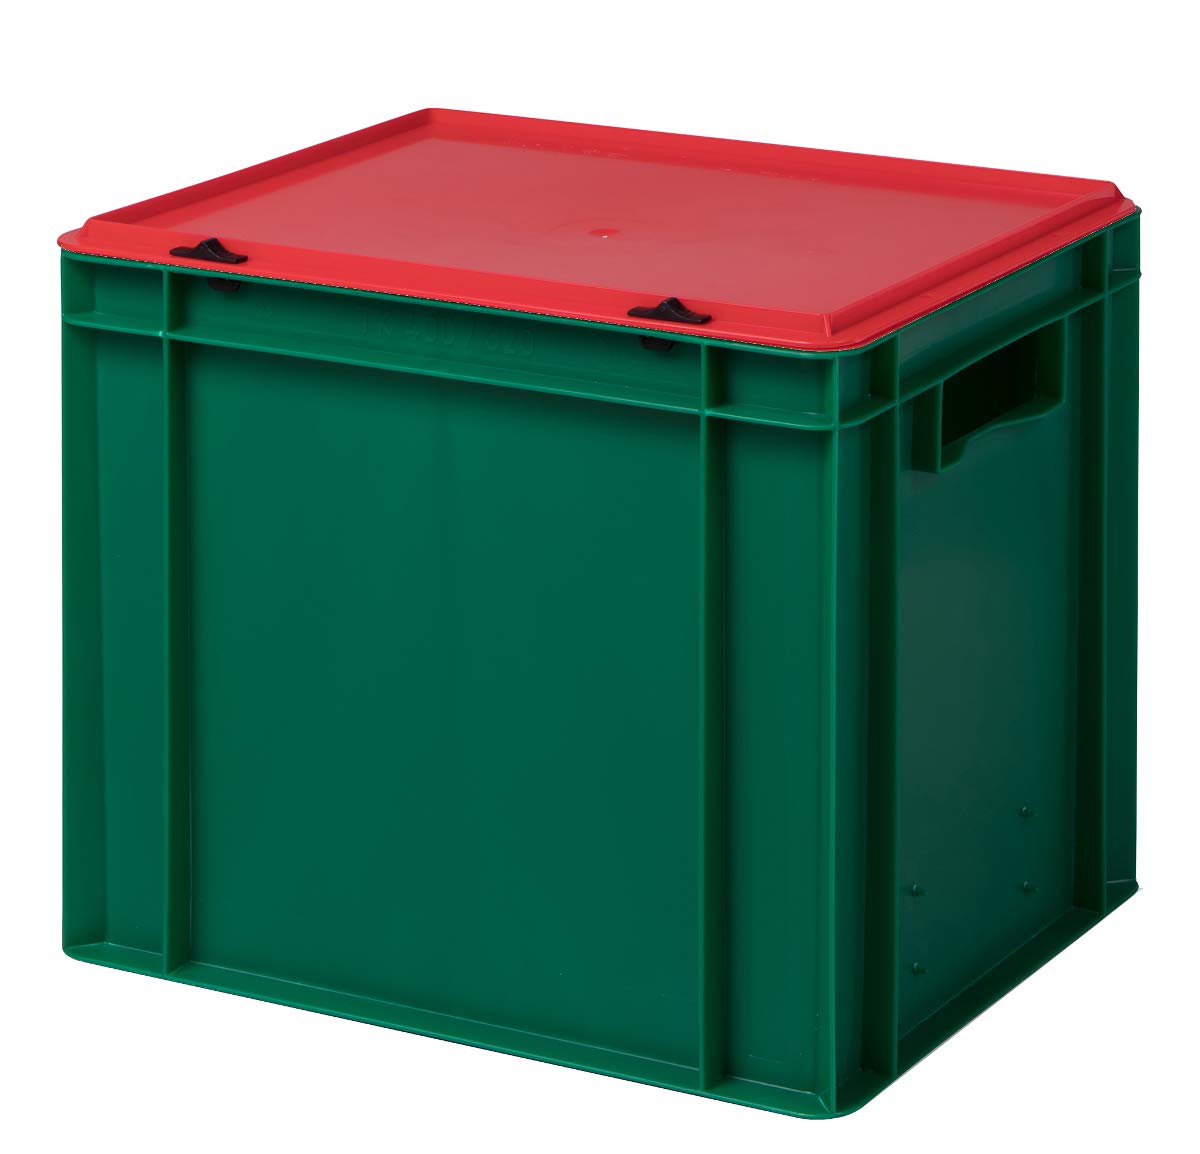 1a-TopStore Aufbewahrungsbox Weihnachts-Edition rot mit grünem Deckel, 40x30x33,1 cm, aus hochwertigem Kunststoff